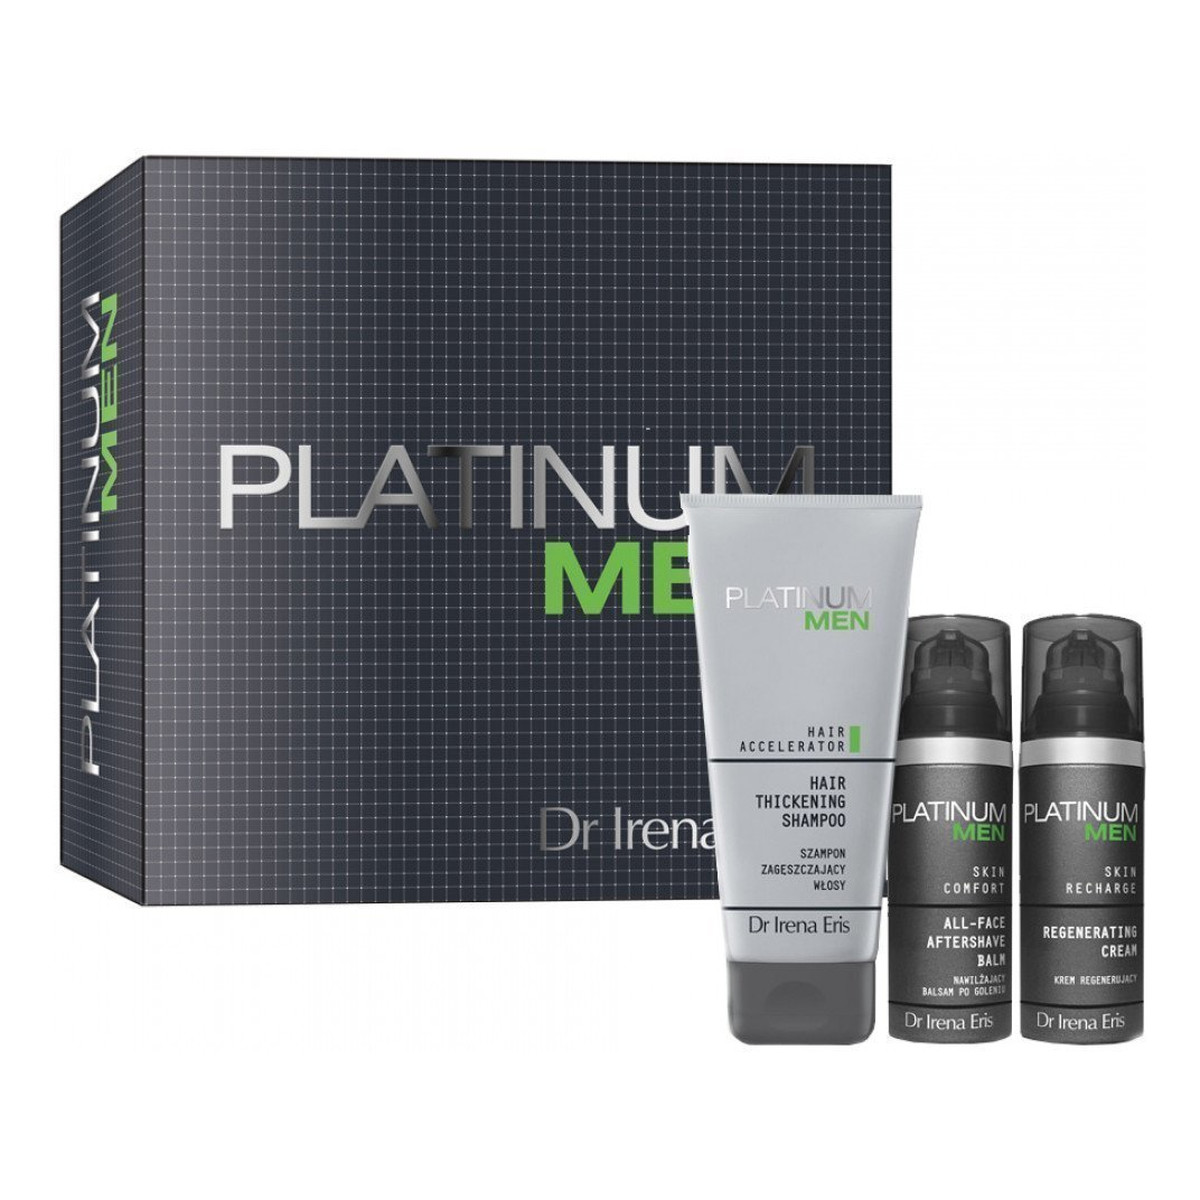 Dr Irena Eris Platinum Men zestaw nawilżający balsam po goleniu na dzień 50ml + krem regenerujący do twarzy na dzień i noc 50ml + szampon zagęszczający włosy